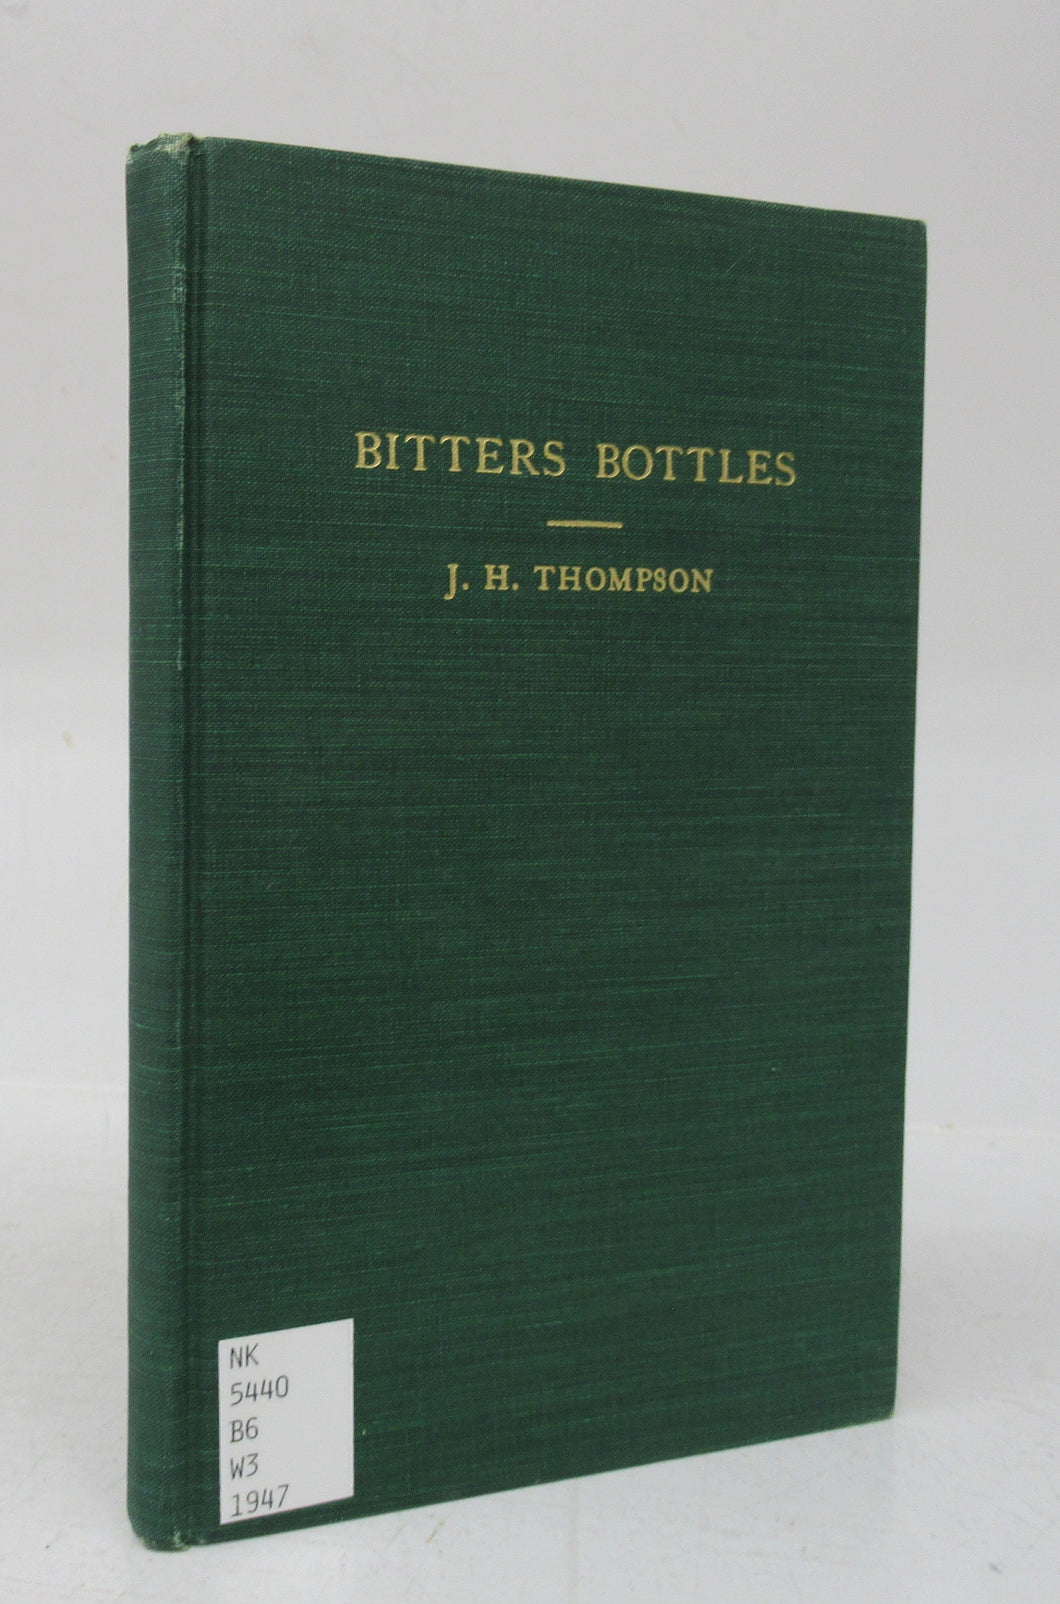 Bitters Bottles